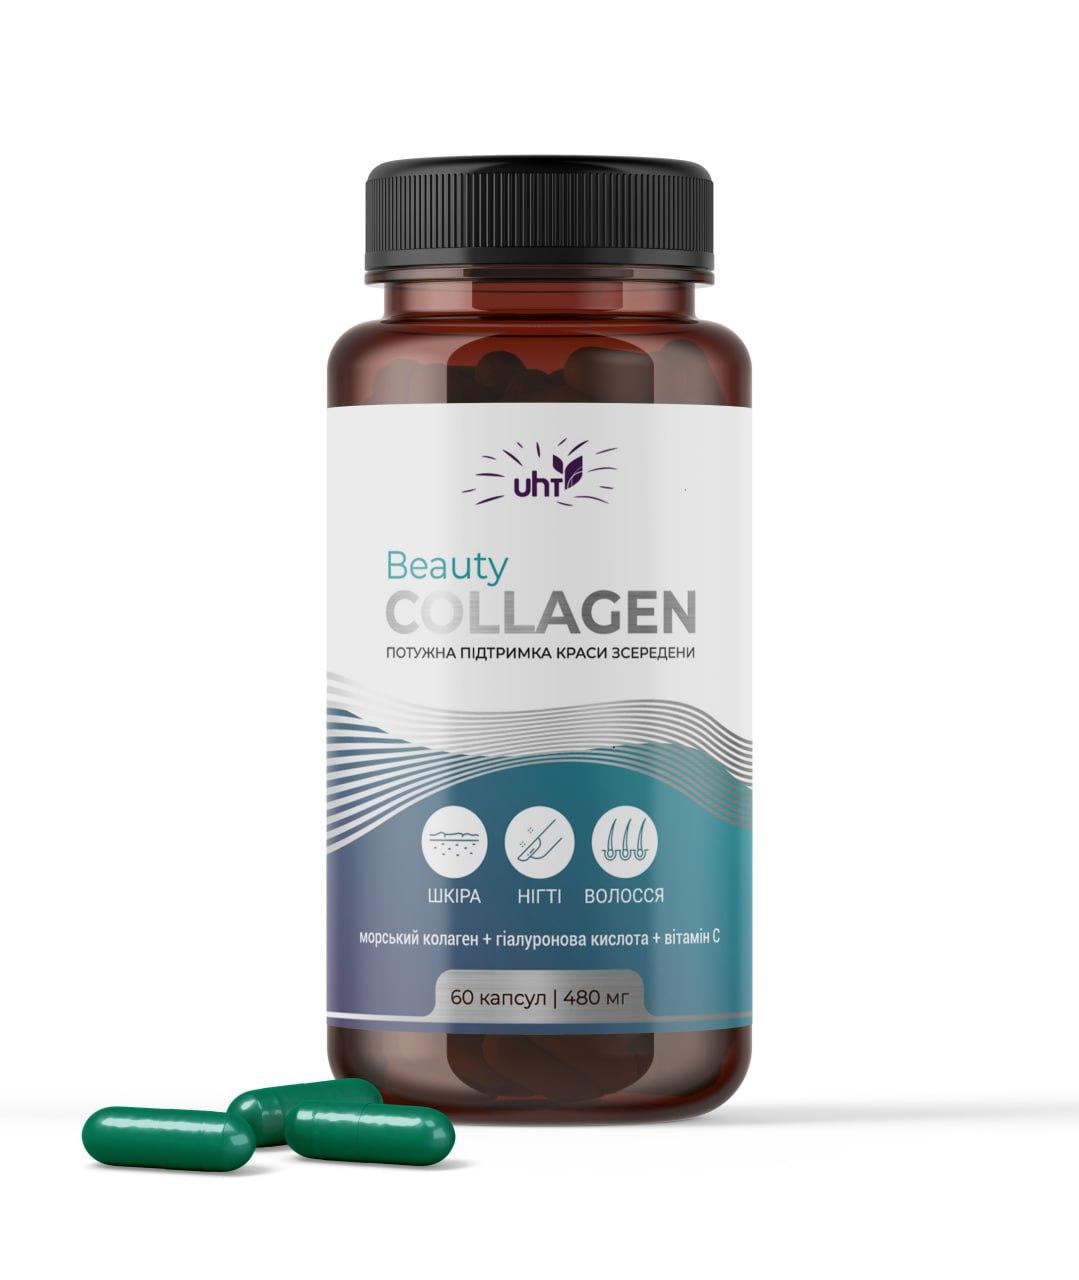 Beauty Collagen Морський колаген із гіалуроновою кислотою і вітаміном С. Колаген у капсулах.